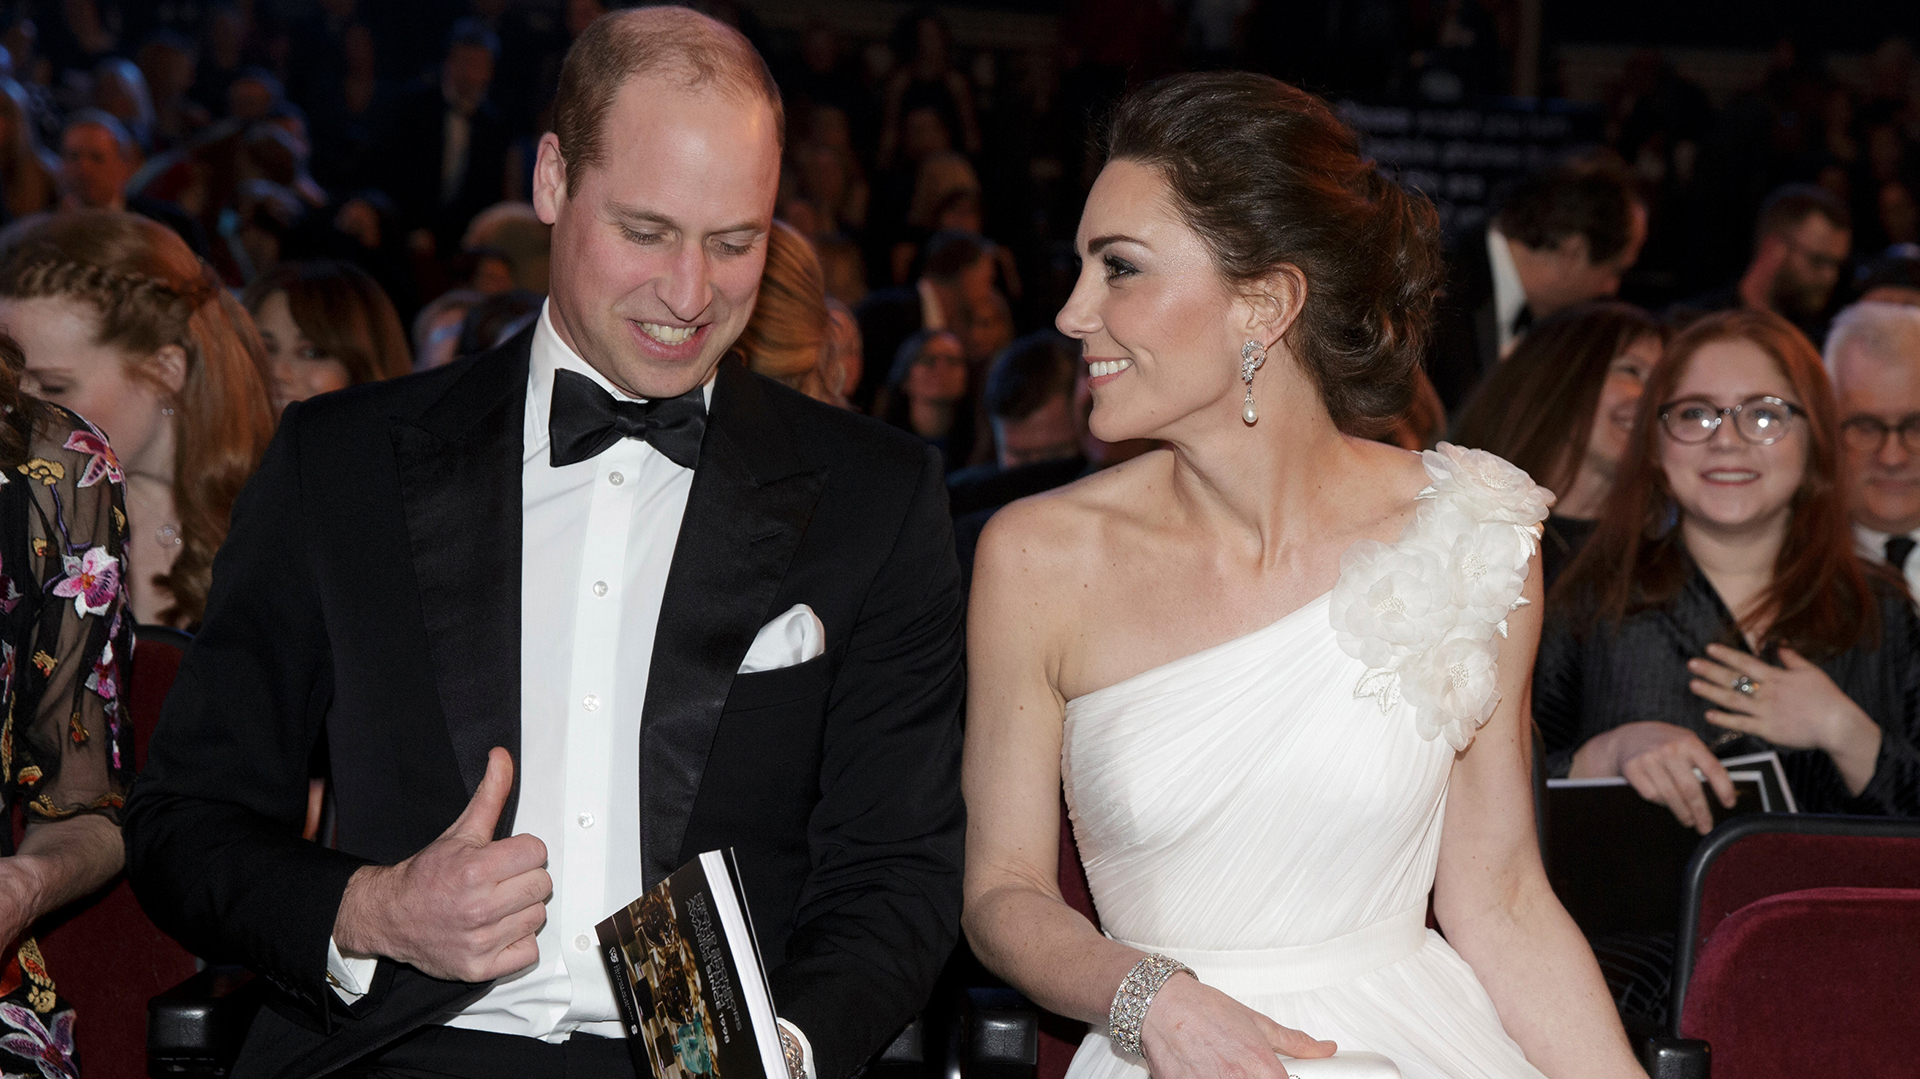 El príncipe William,  segundo en la línea de sucesión al trono, se casó con Kate Middleton en 2011 tras ocho años de noviazgo